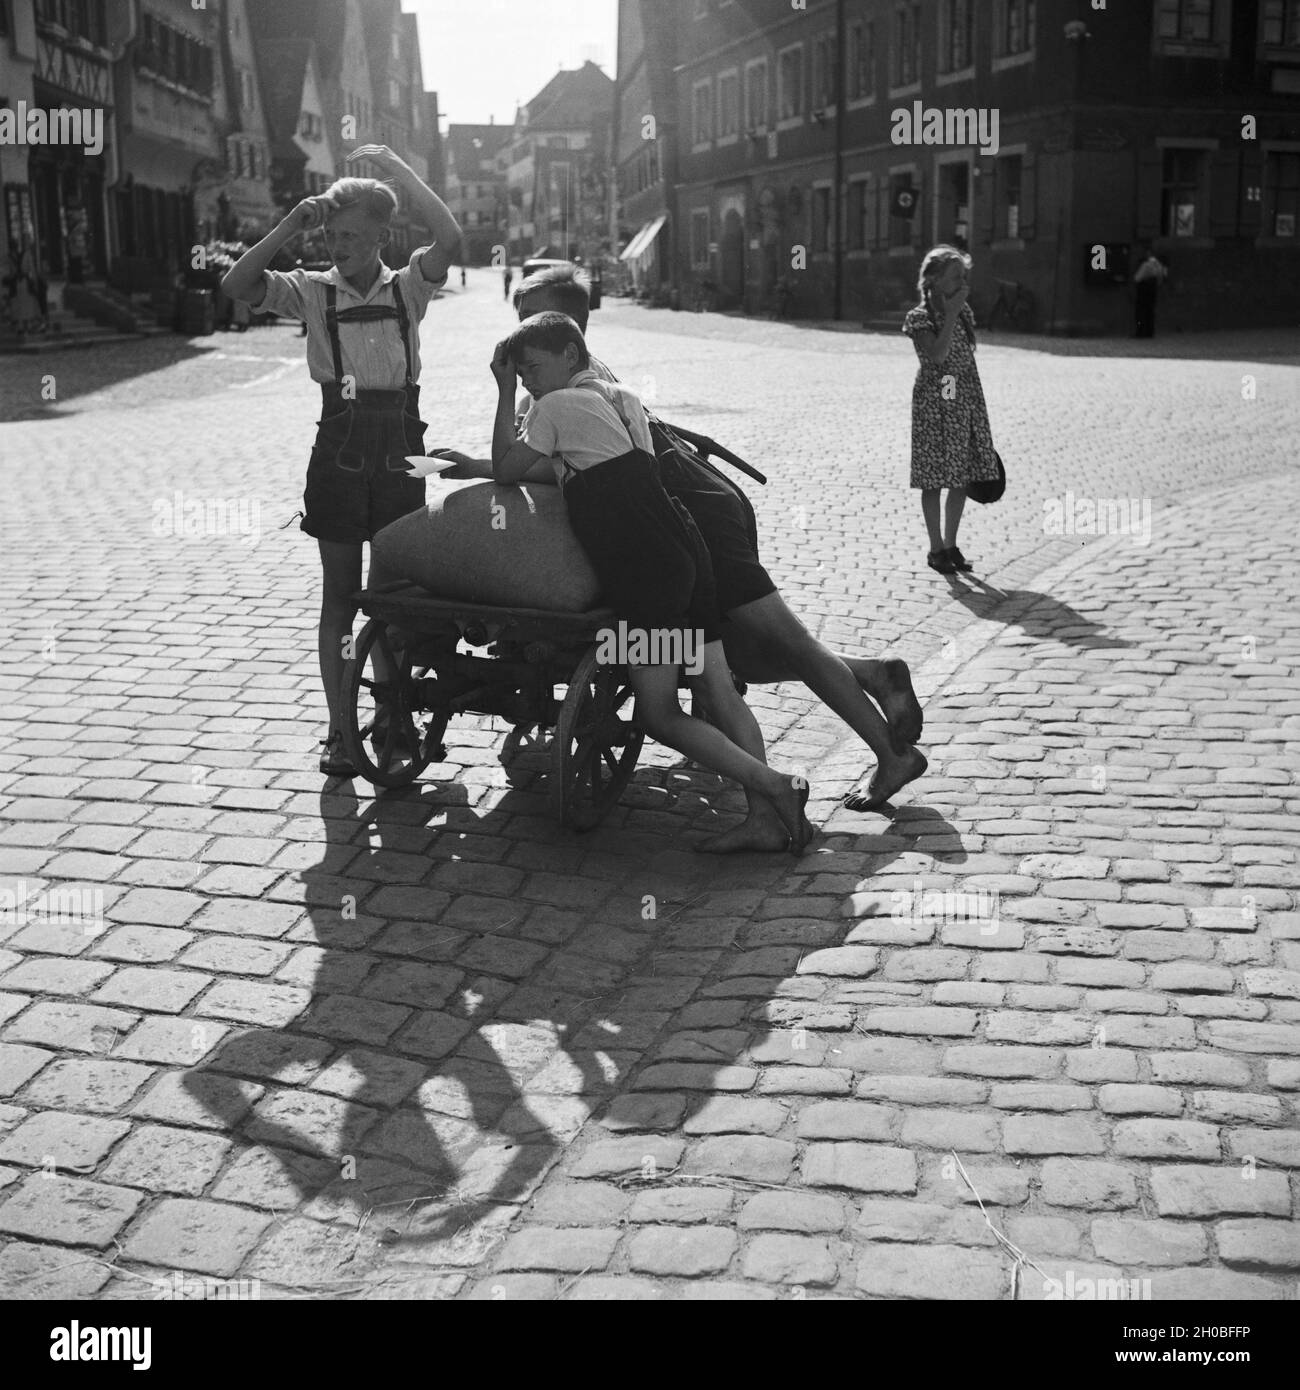 Jungen mit einem Handkarren in einer Straße in Dinkelsbühl, Deutschland 1930er Jahre. Boys with a push cart in a street of Dinkelsbuehl. Germany 1930s. Stock Photo